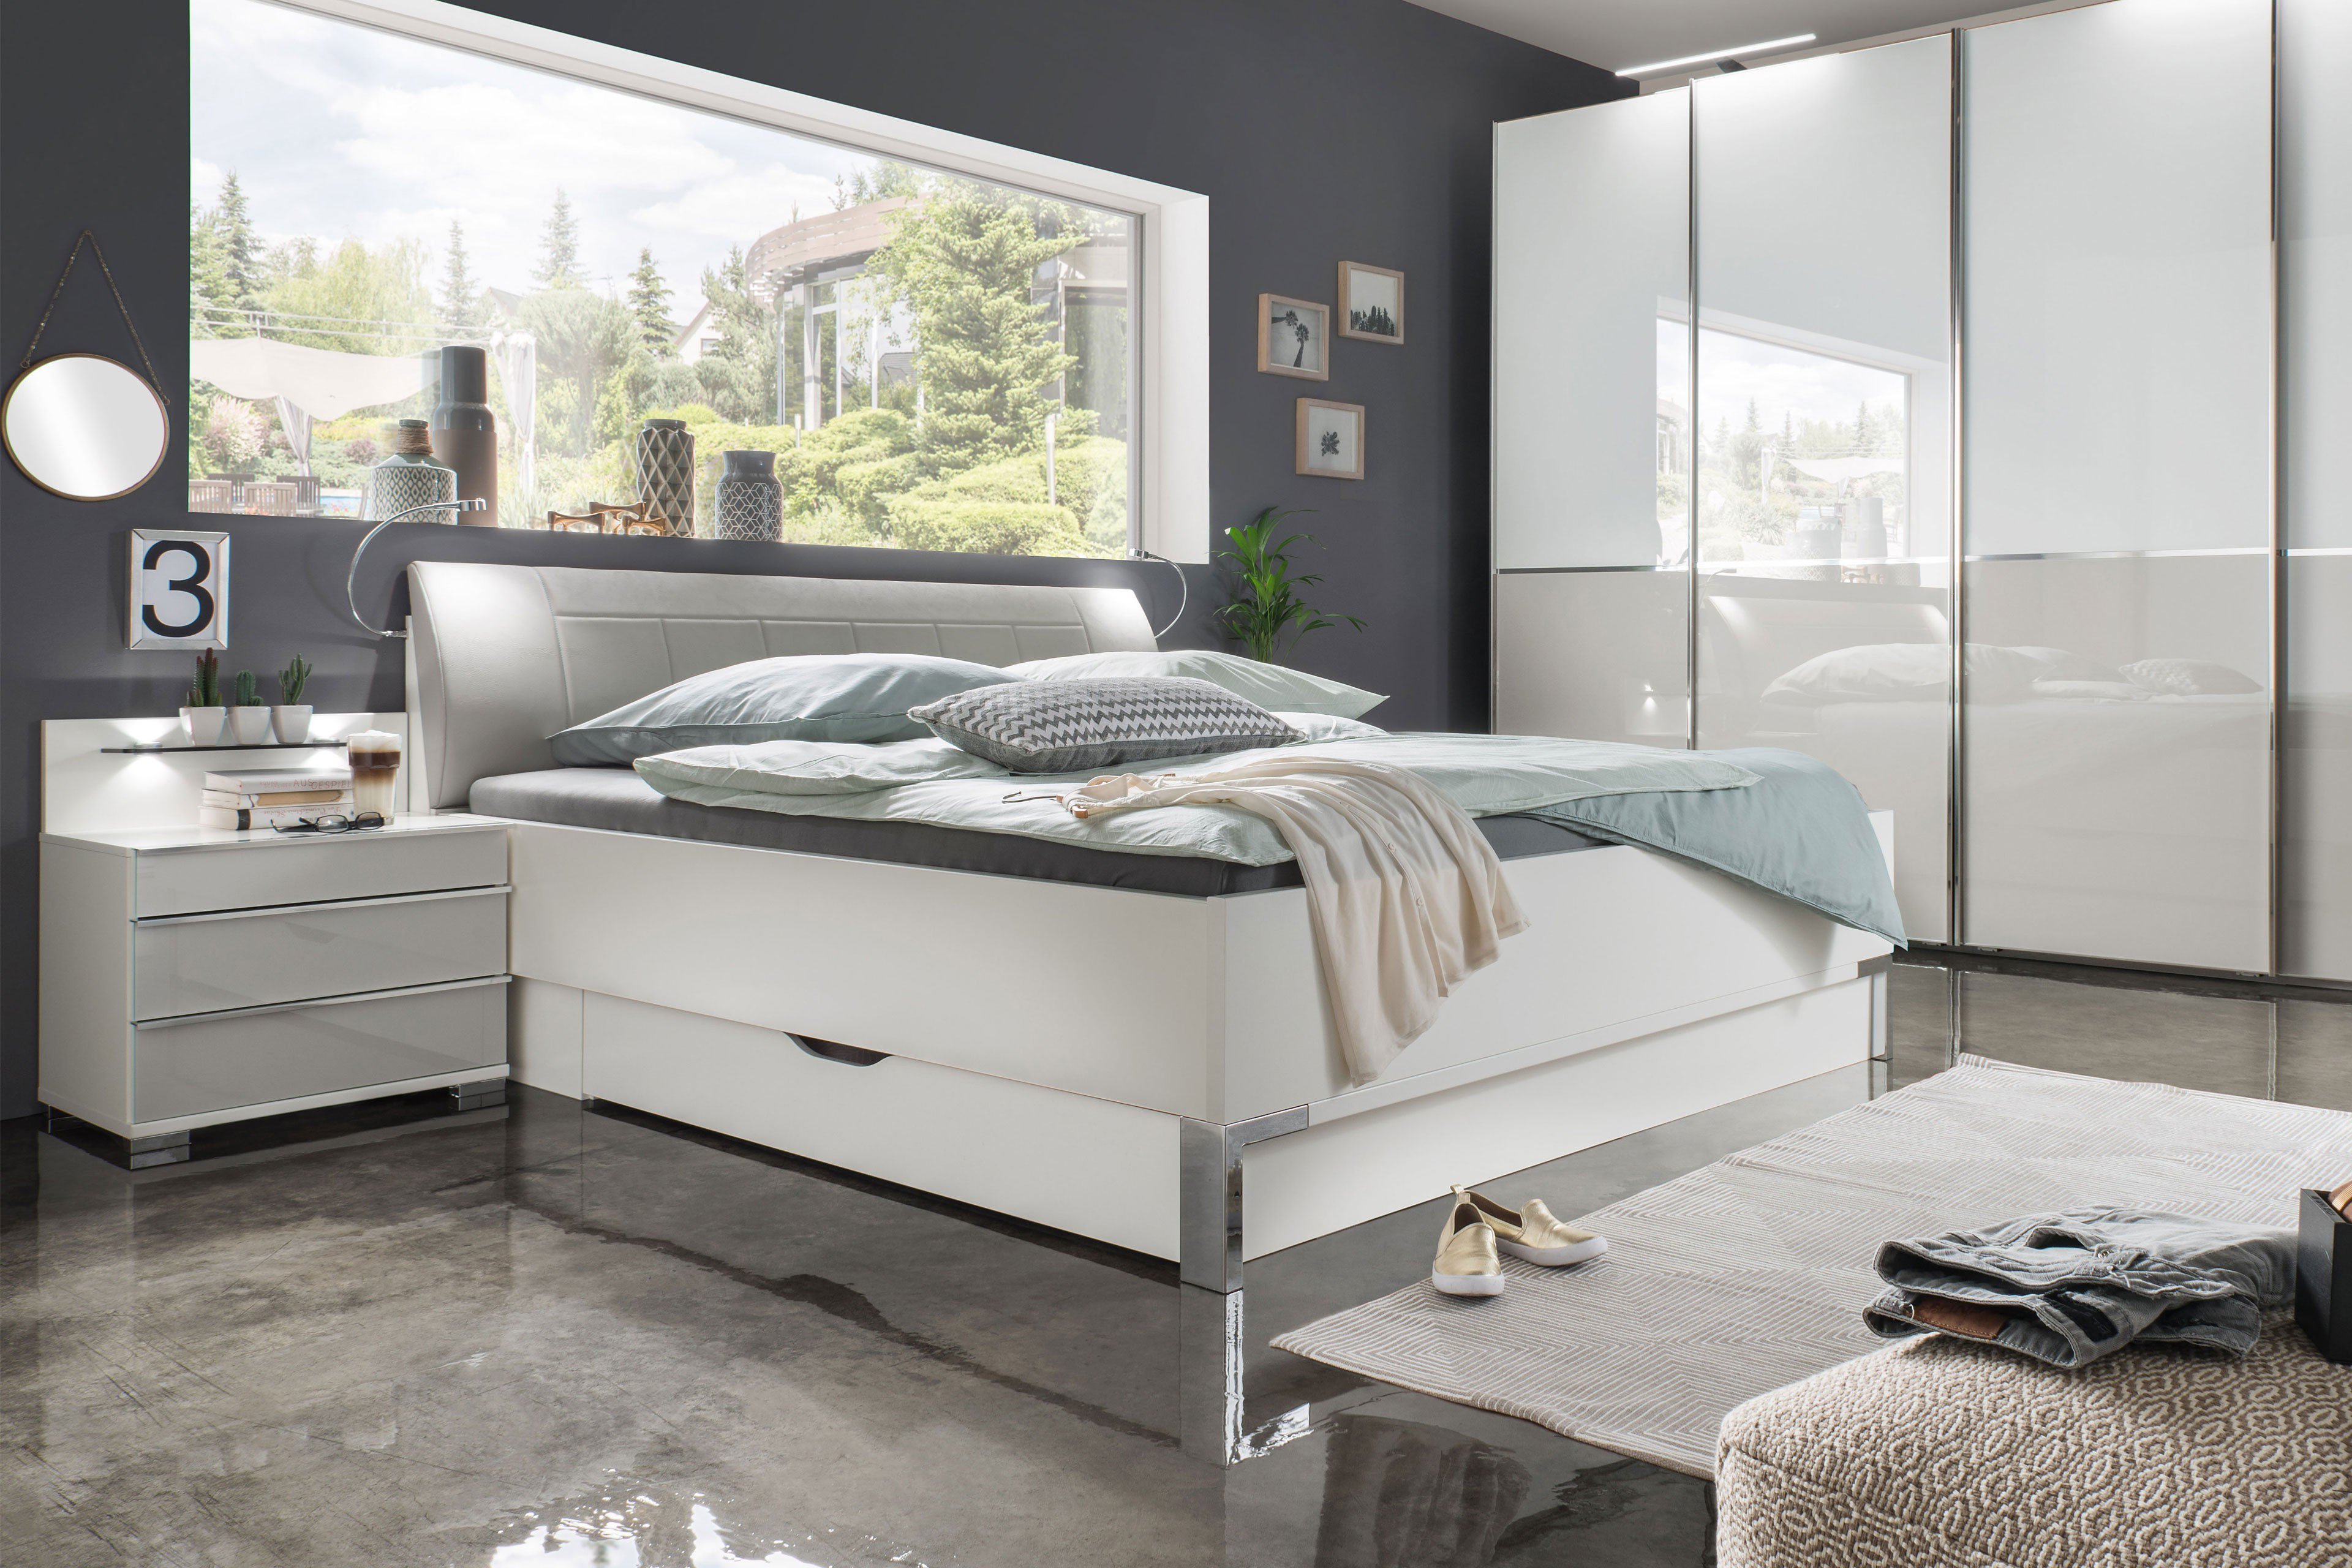 Wiemann Shanghai 2 160er Bett weiß - grau | Möbel Letz - Ihr Online-Shop